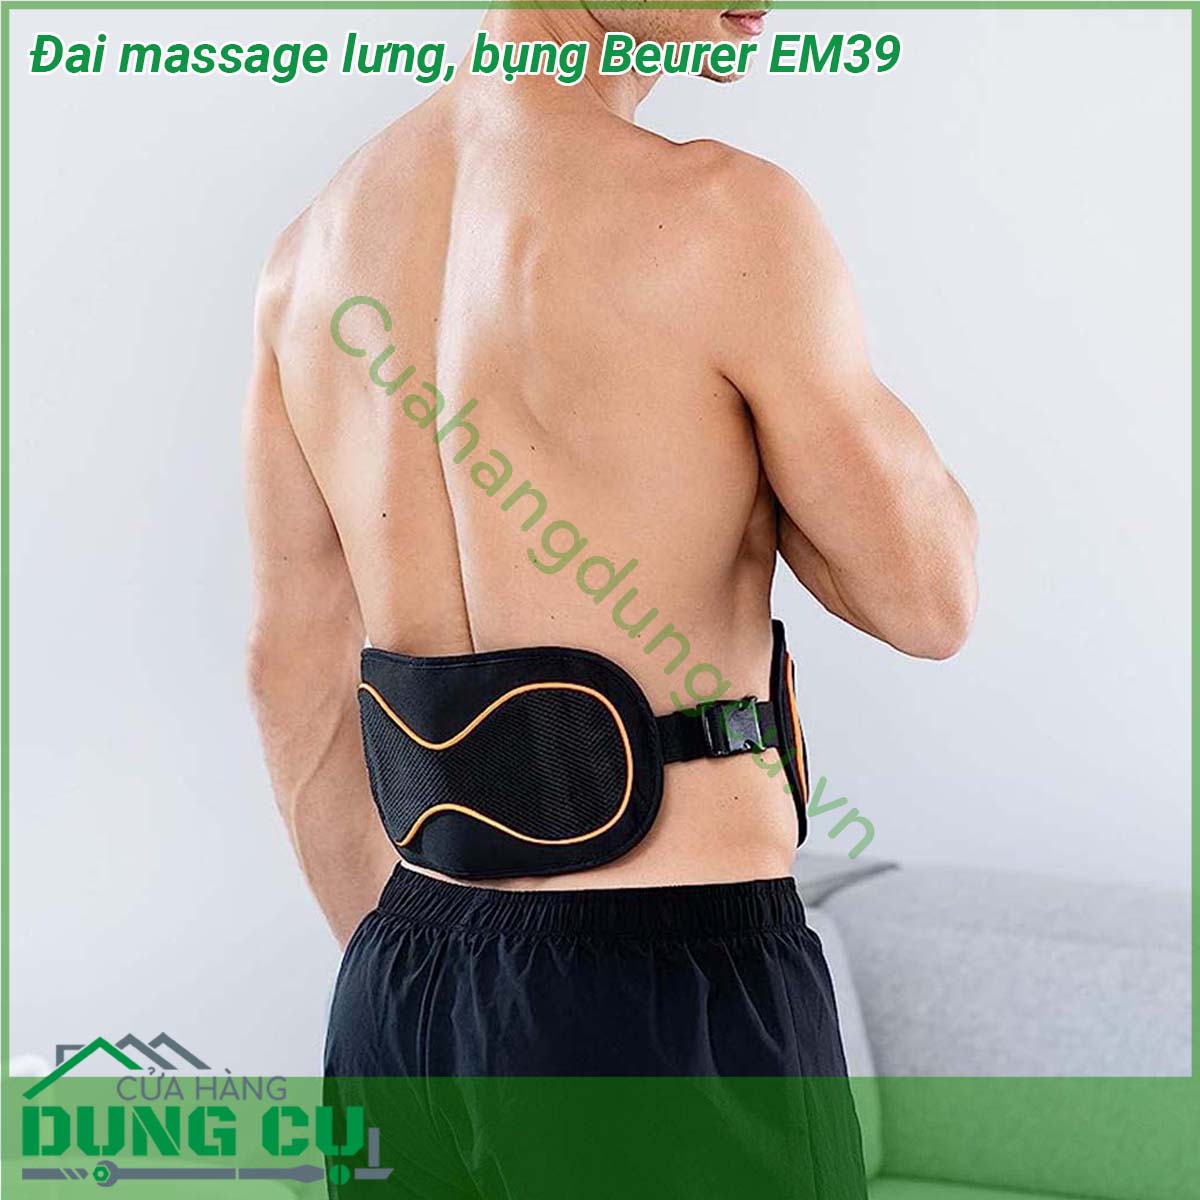 Đai massage lưng bụng Beurer EM39 hỗ trợ điều trị các bệnh đau lưng đau cơ sử dụng kích thích cơ điện để tăng cường các cơ không hoạt động ngăn ngừa teo cơ liên quan đến bất động hoặc bệnh không hoạt động liên quan phục hồi gân và cơ bắp và duy trì cơ bắp di động trong và sau khi bệnh